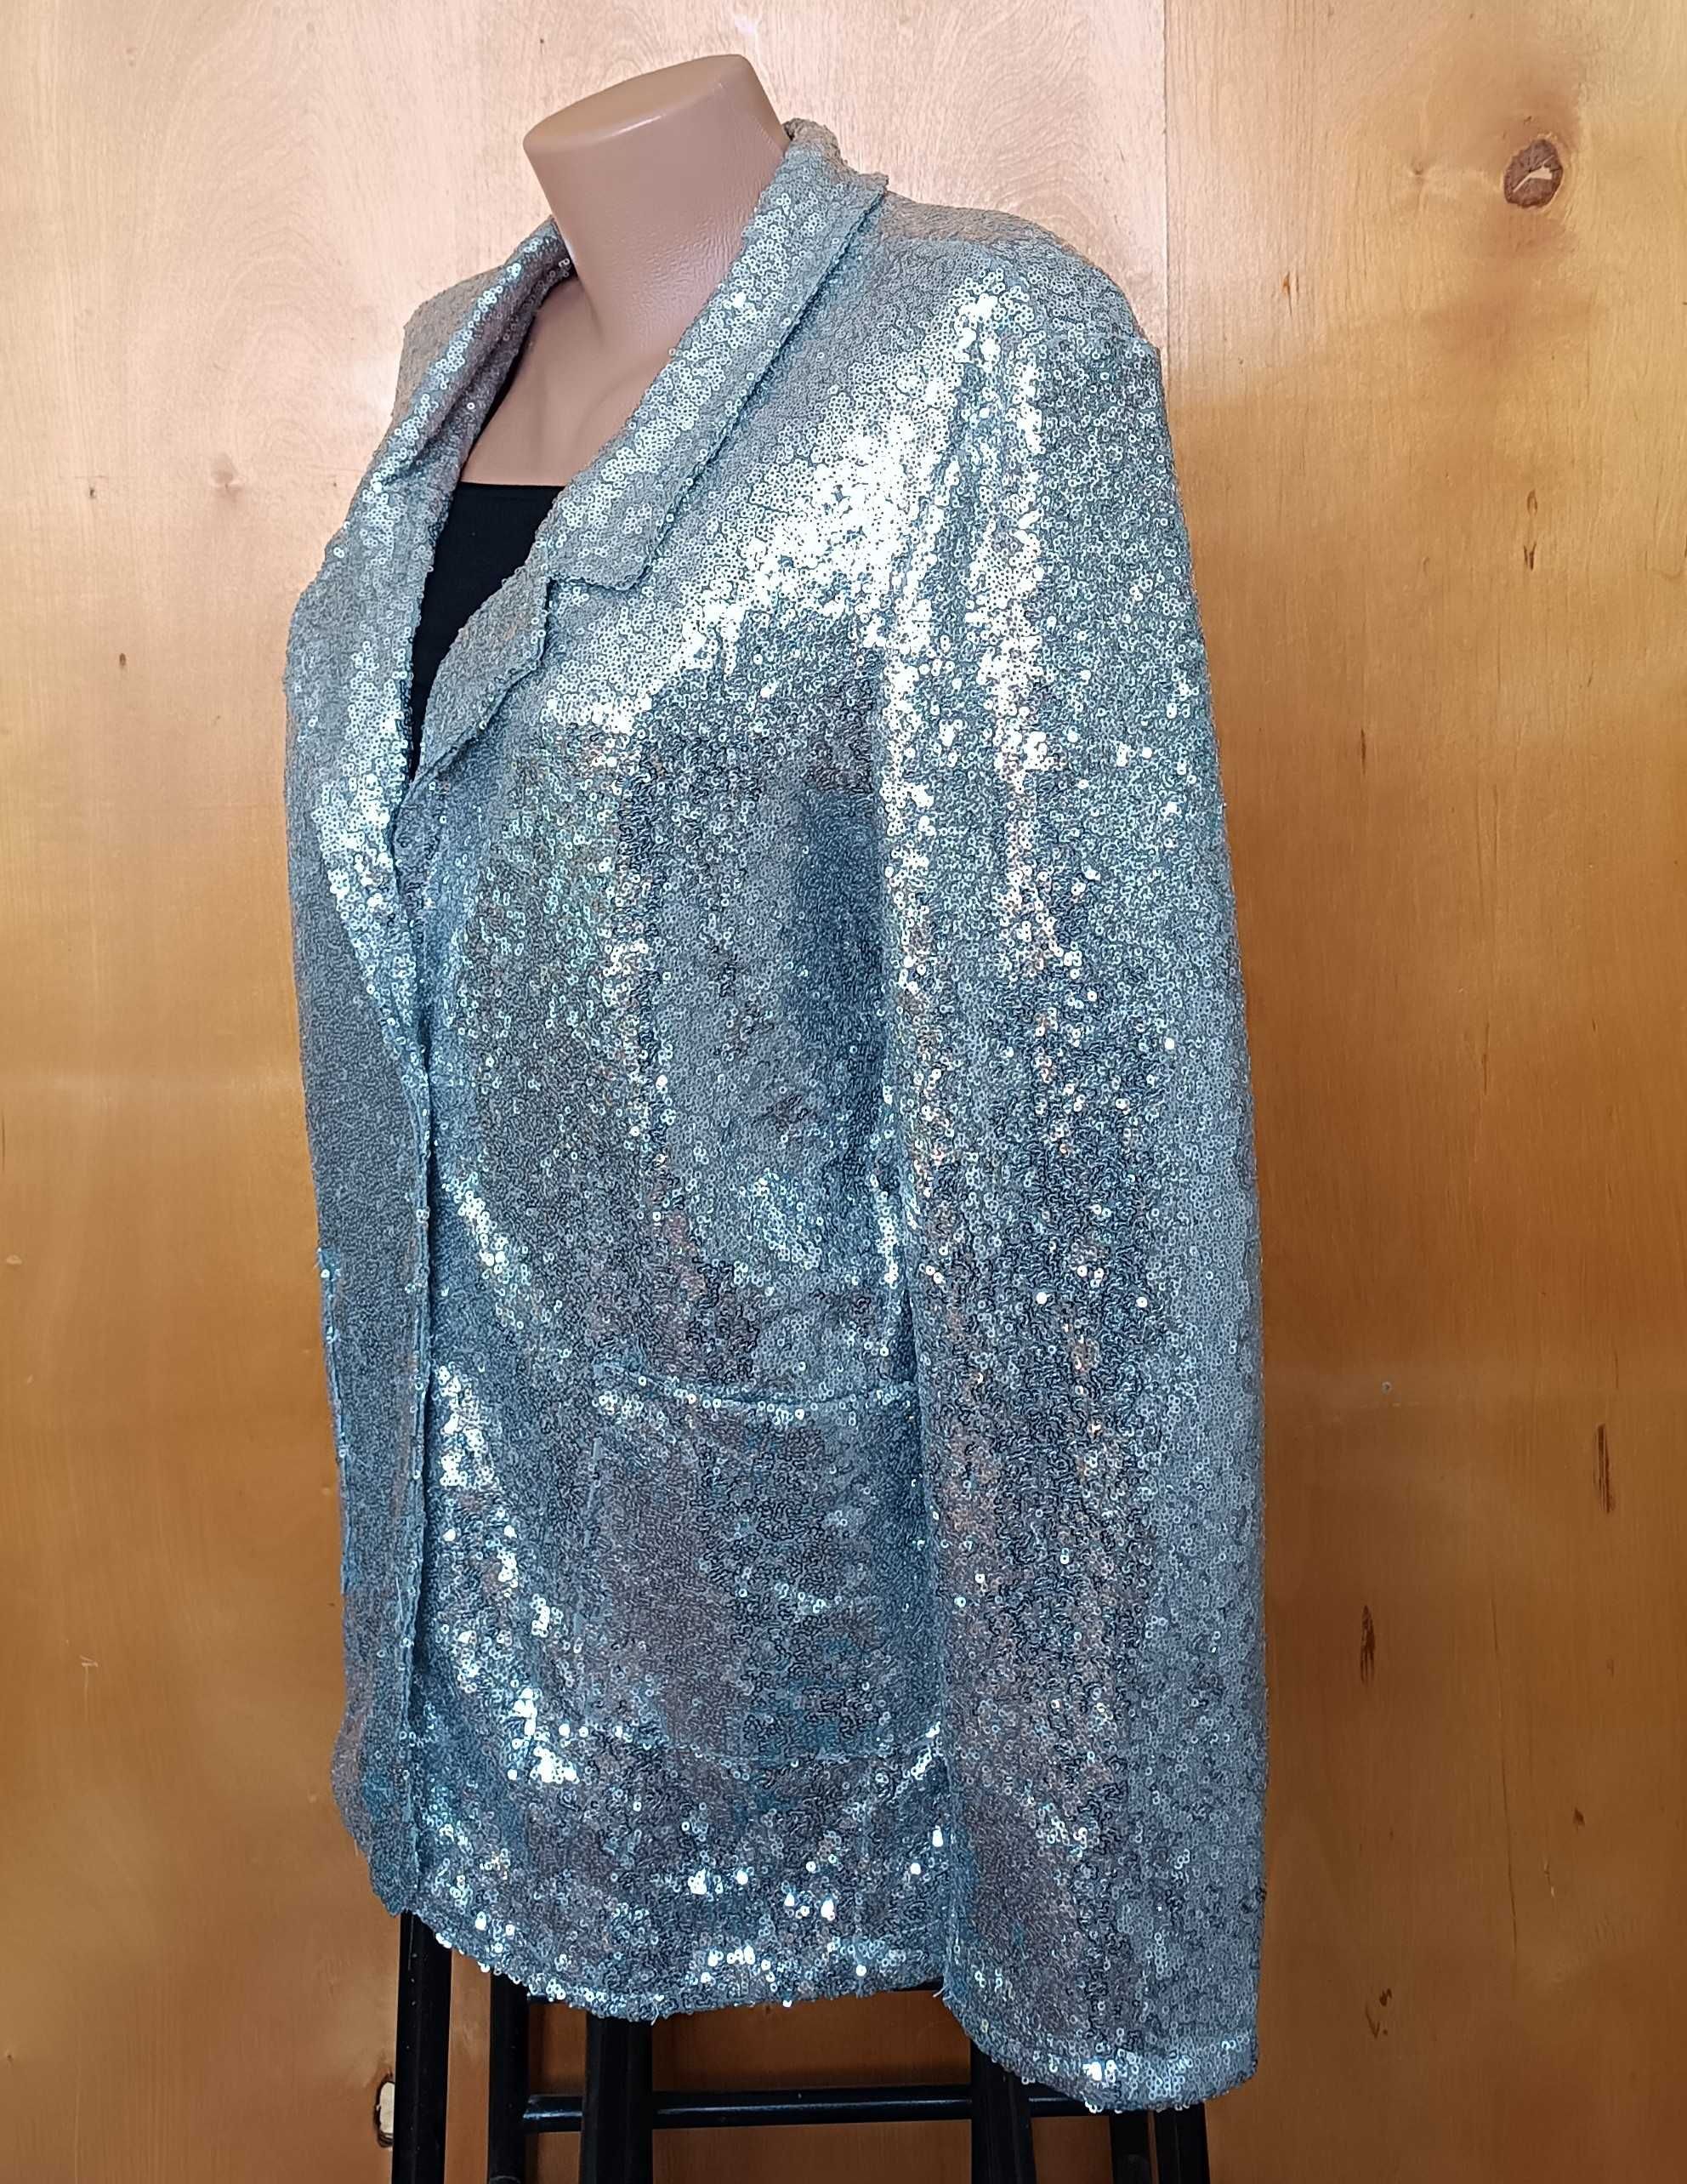 р 14-16 48-50-52 серебристый блестящий жакет пиджак блейзер в пайетках